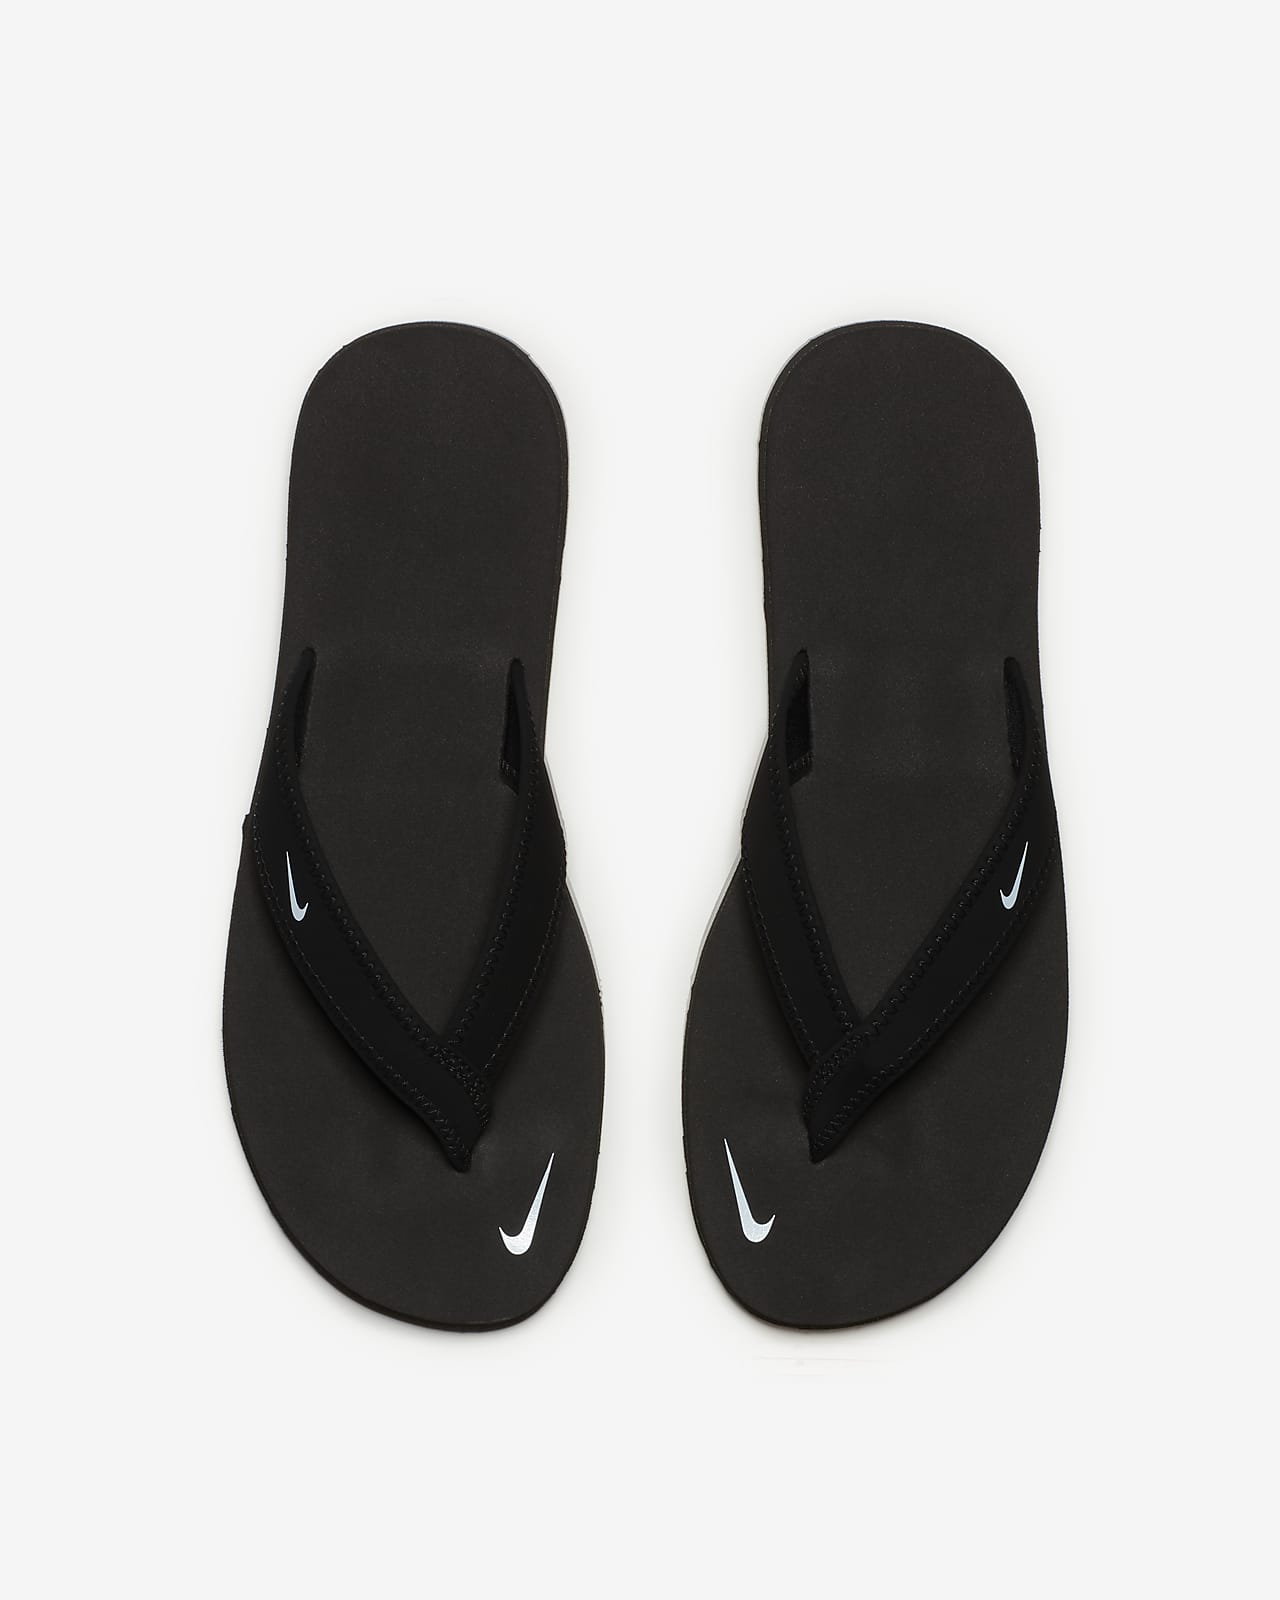  Women's Flip-Flops - Nike / Women's Flip-Flops / Women's Sandals:  Clothing, Shoes & Jewelry